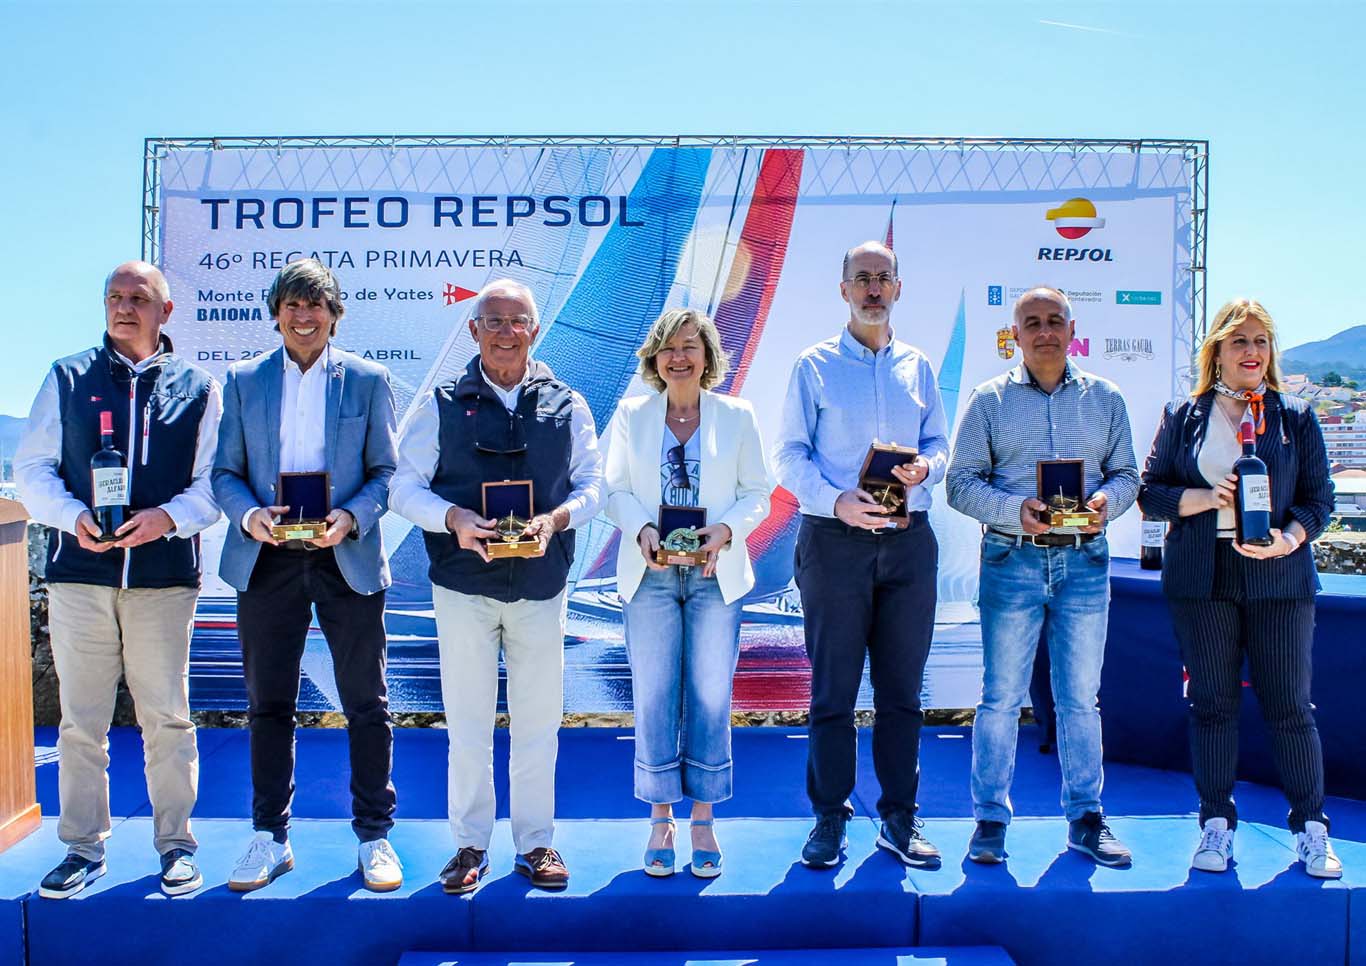 El Trofeo Repsol recupera el clásico recorrido entre Baiona y Sanxenxo